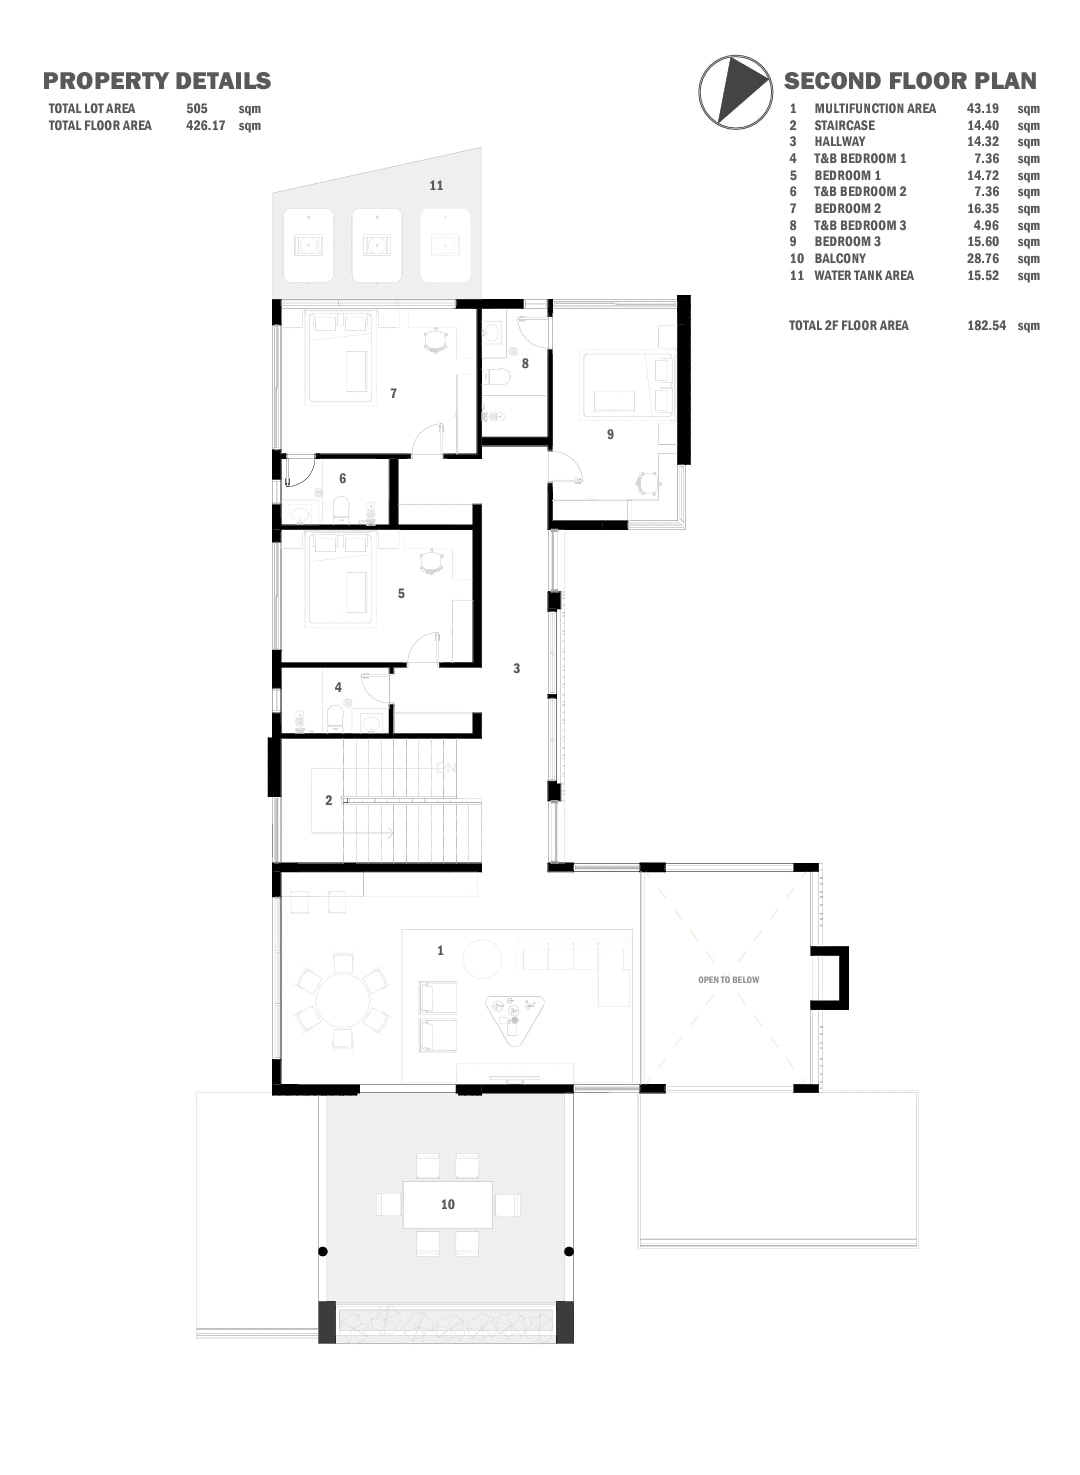 House floor plan second floor